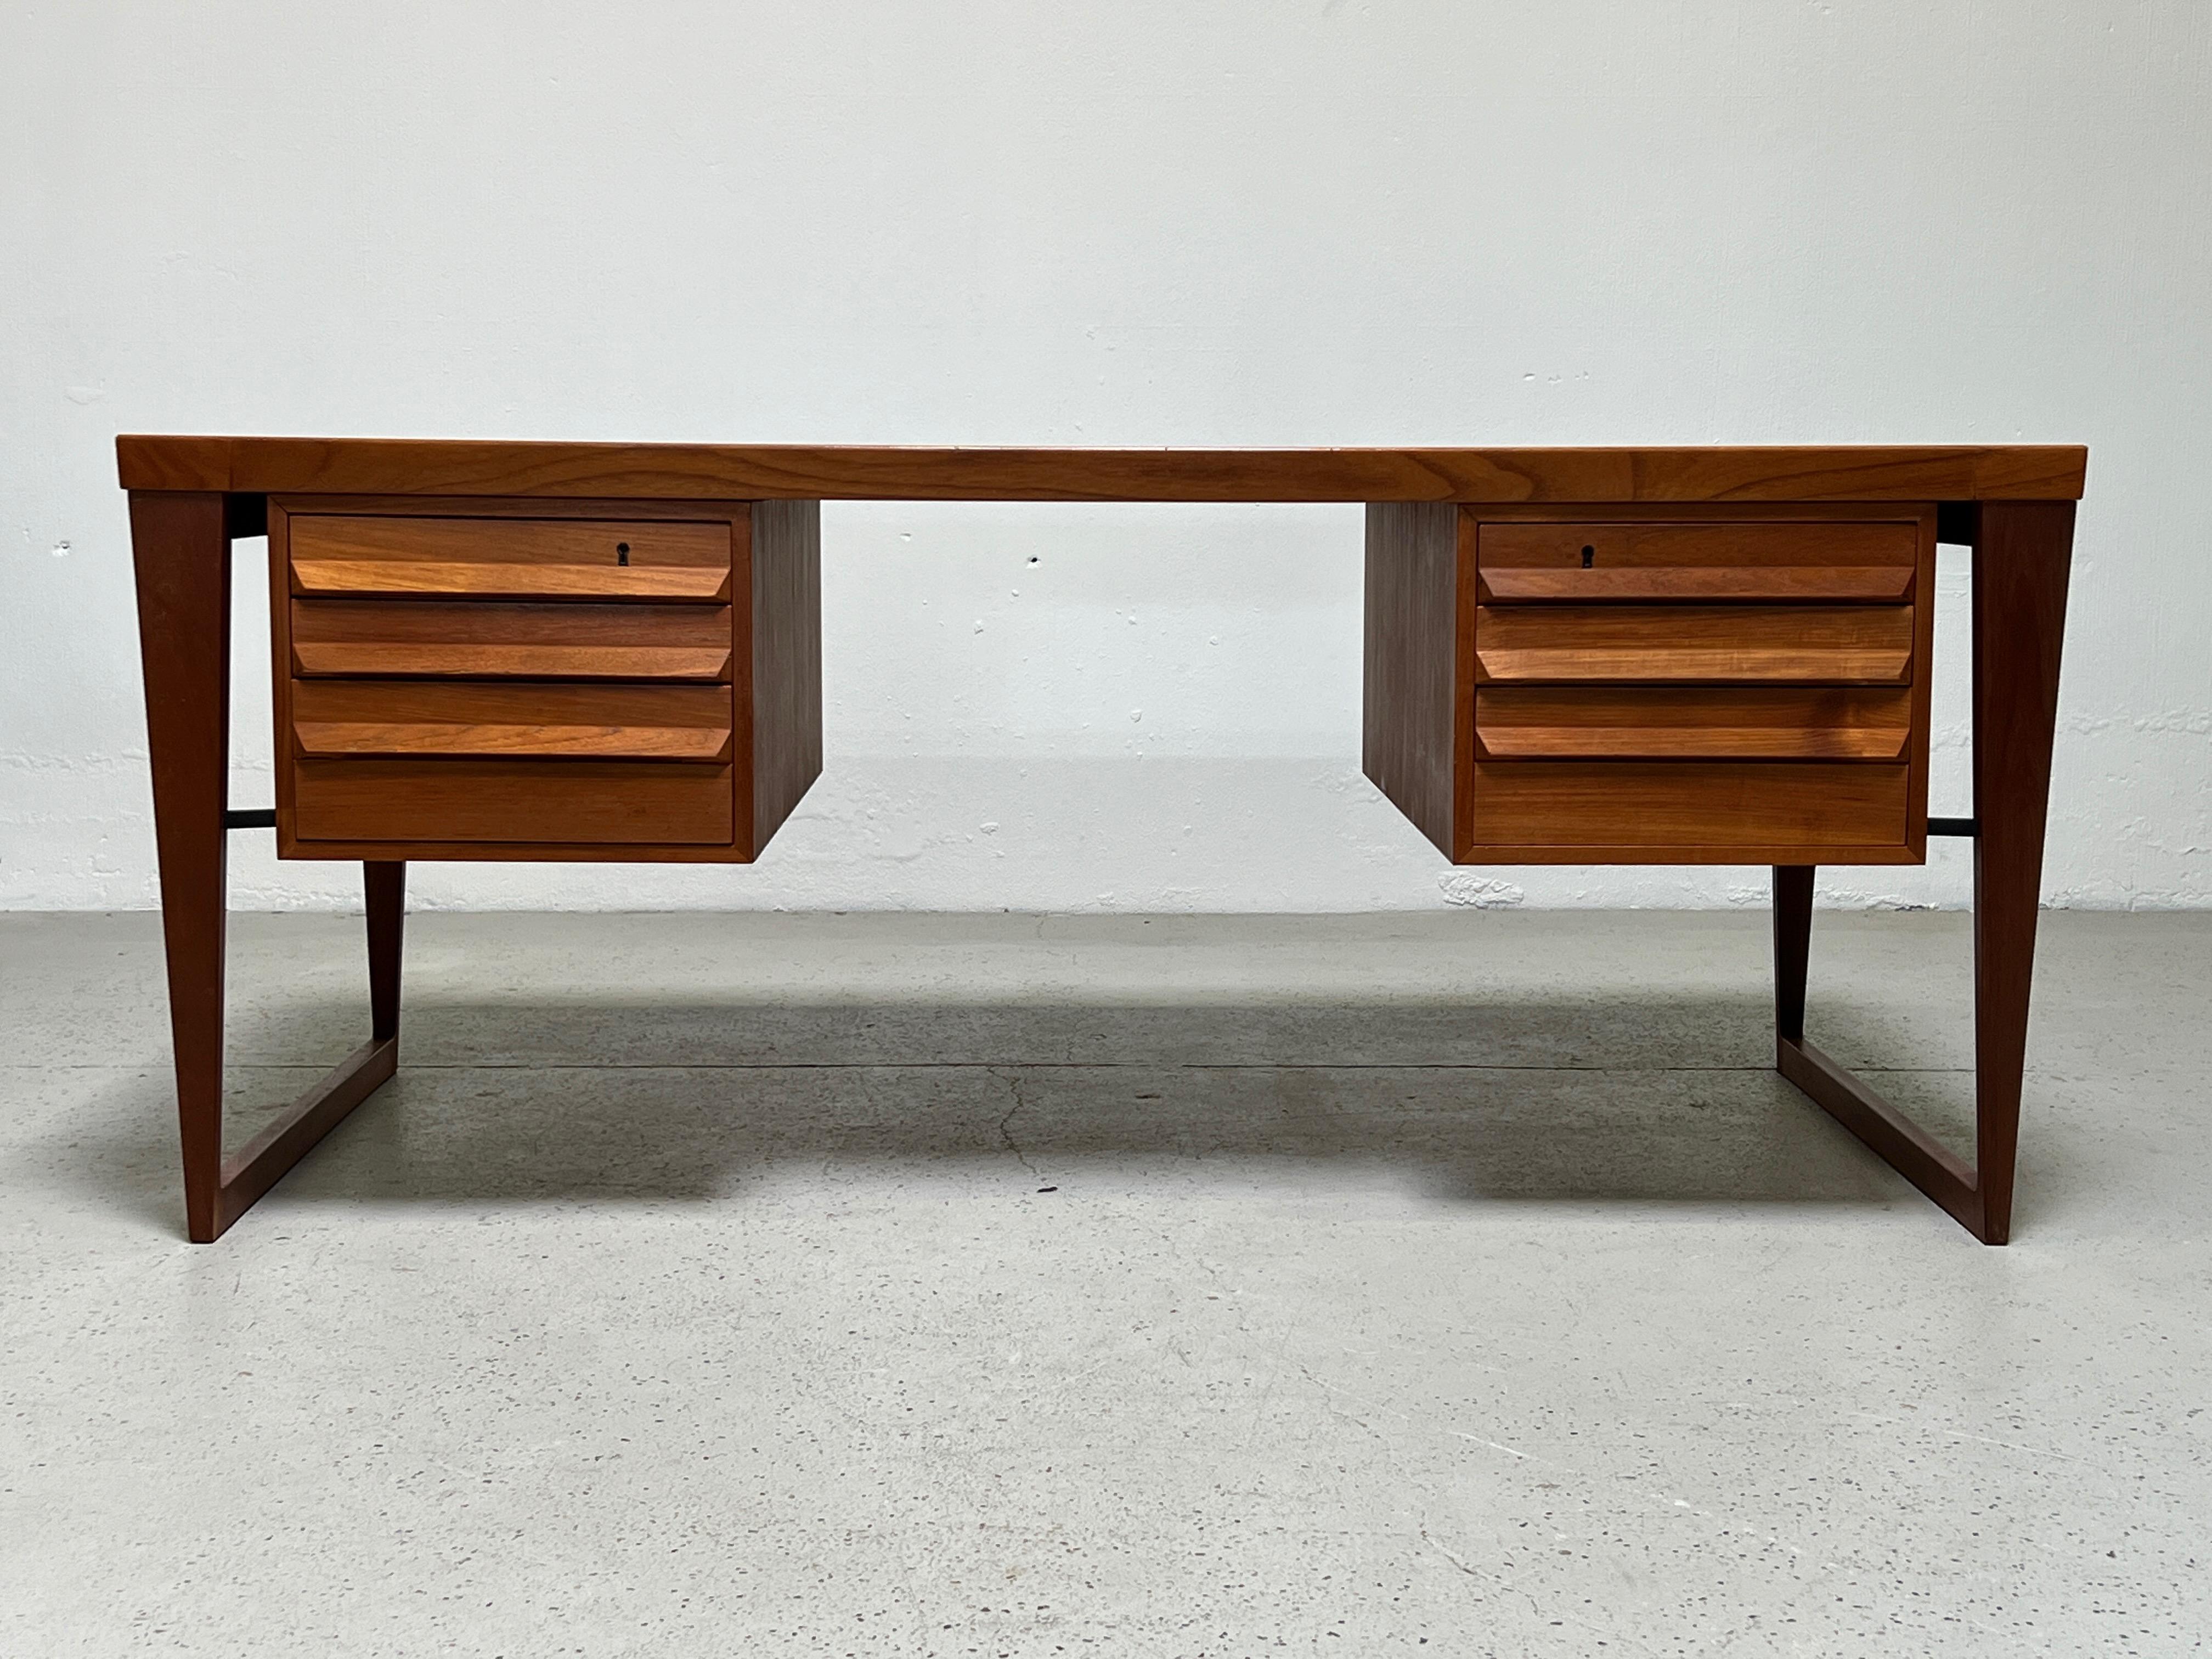 Ein großer Schreibtisch aus Teakholz, Modell Nr. 70, entworfen von Kai Kristiansen für Feldballes Møbelfabrik.